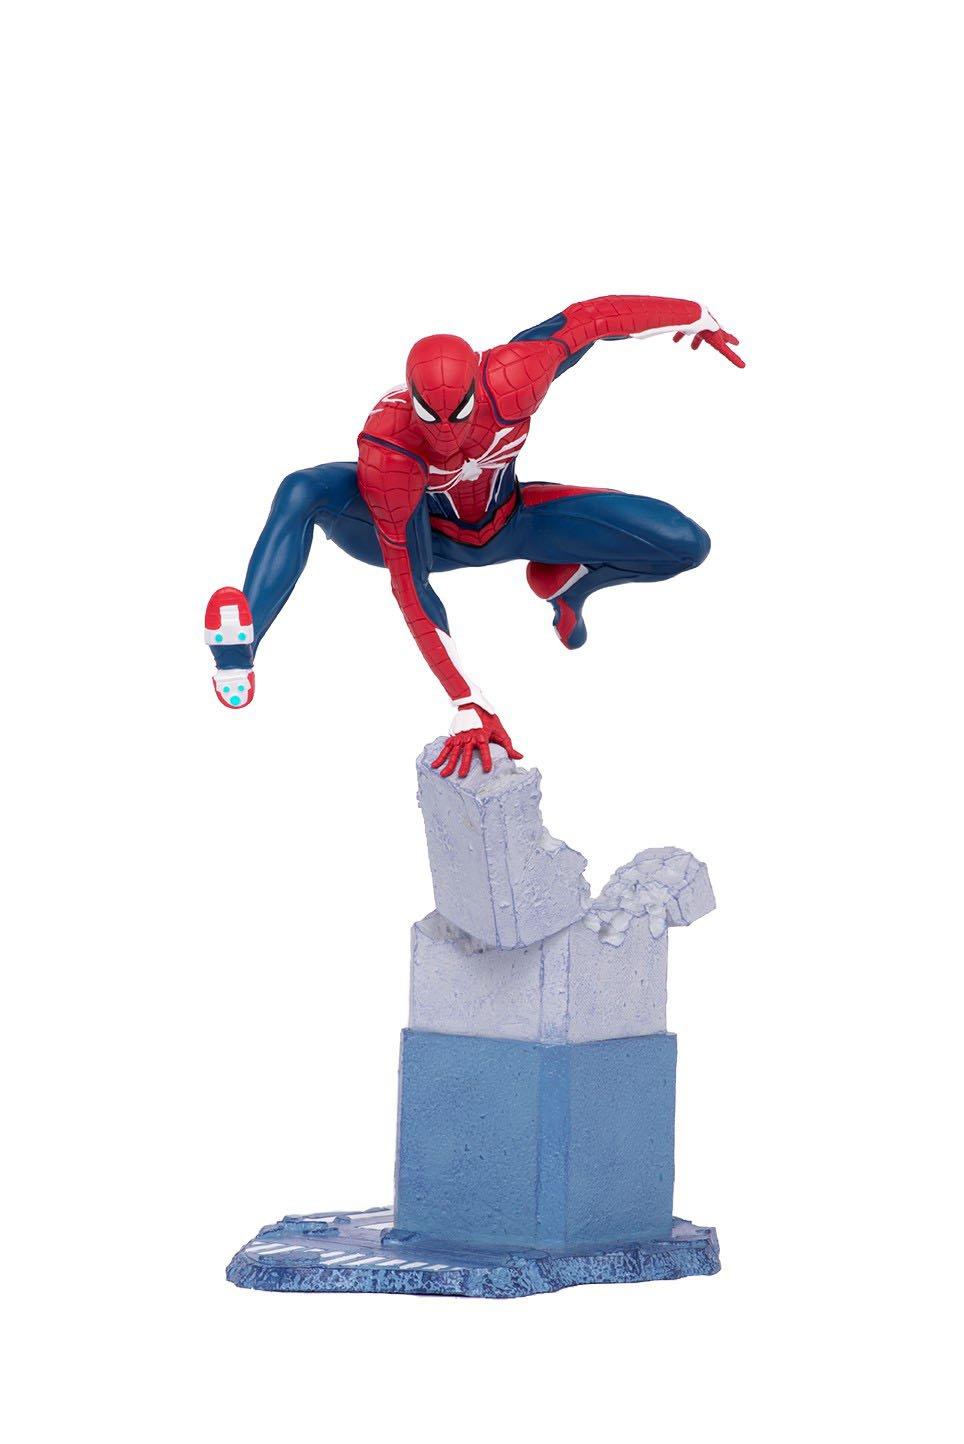 spider man gamerverse figure